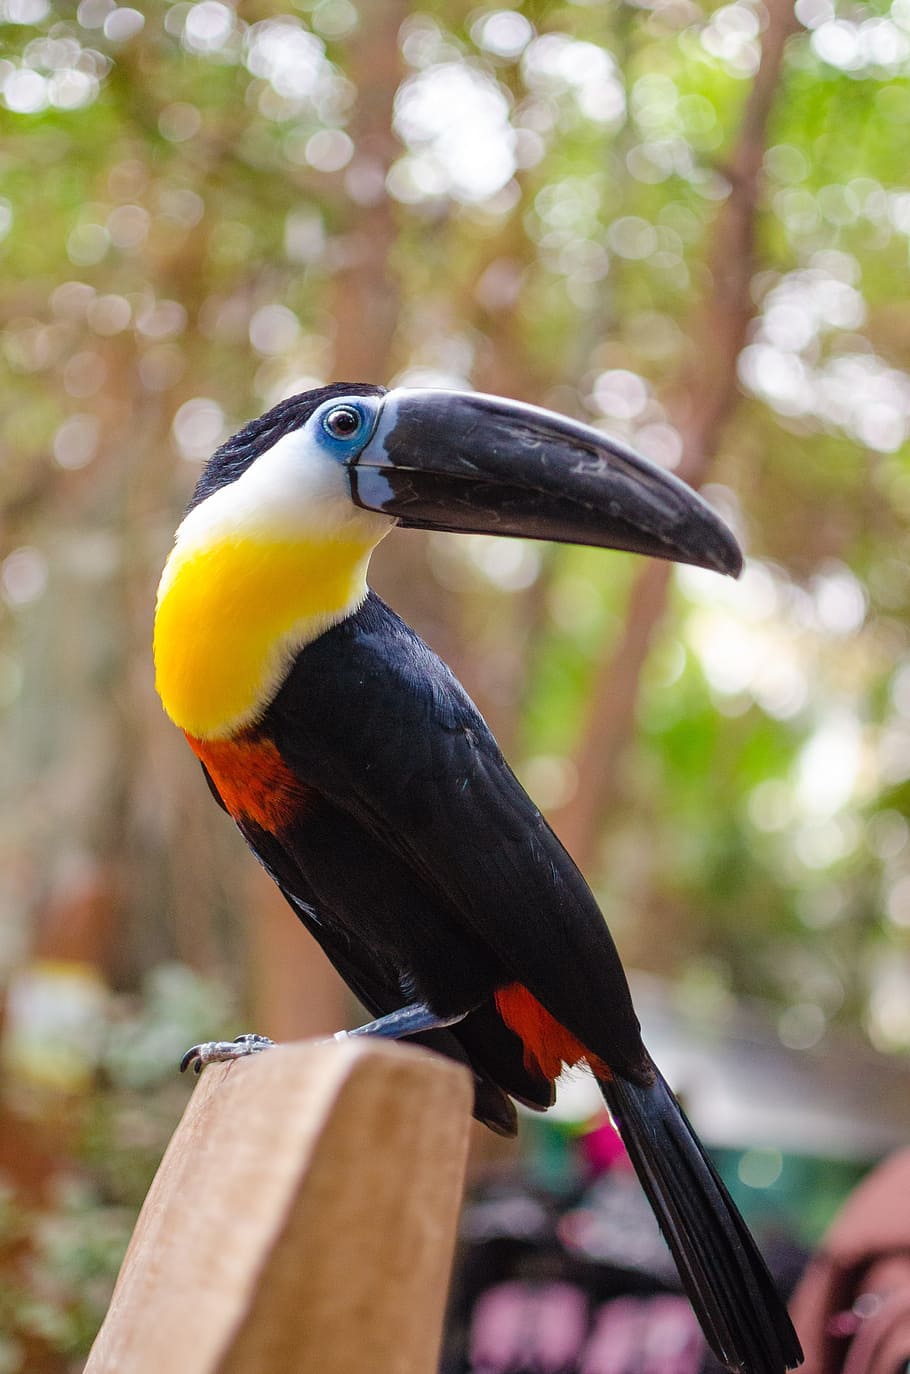 pájaro tucán negro, tucán, escalador tropical, familia ramphastidae, pico grande, colores brillantes, bosque amazónico, aves, exótico, zoológico